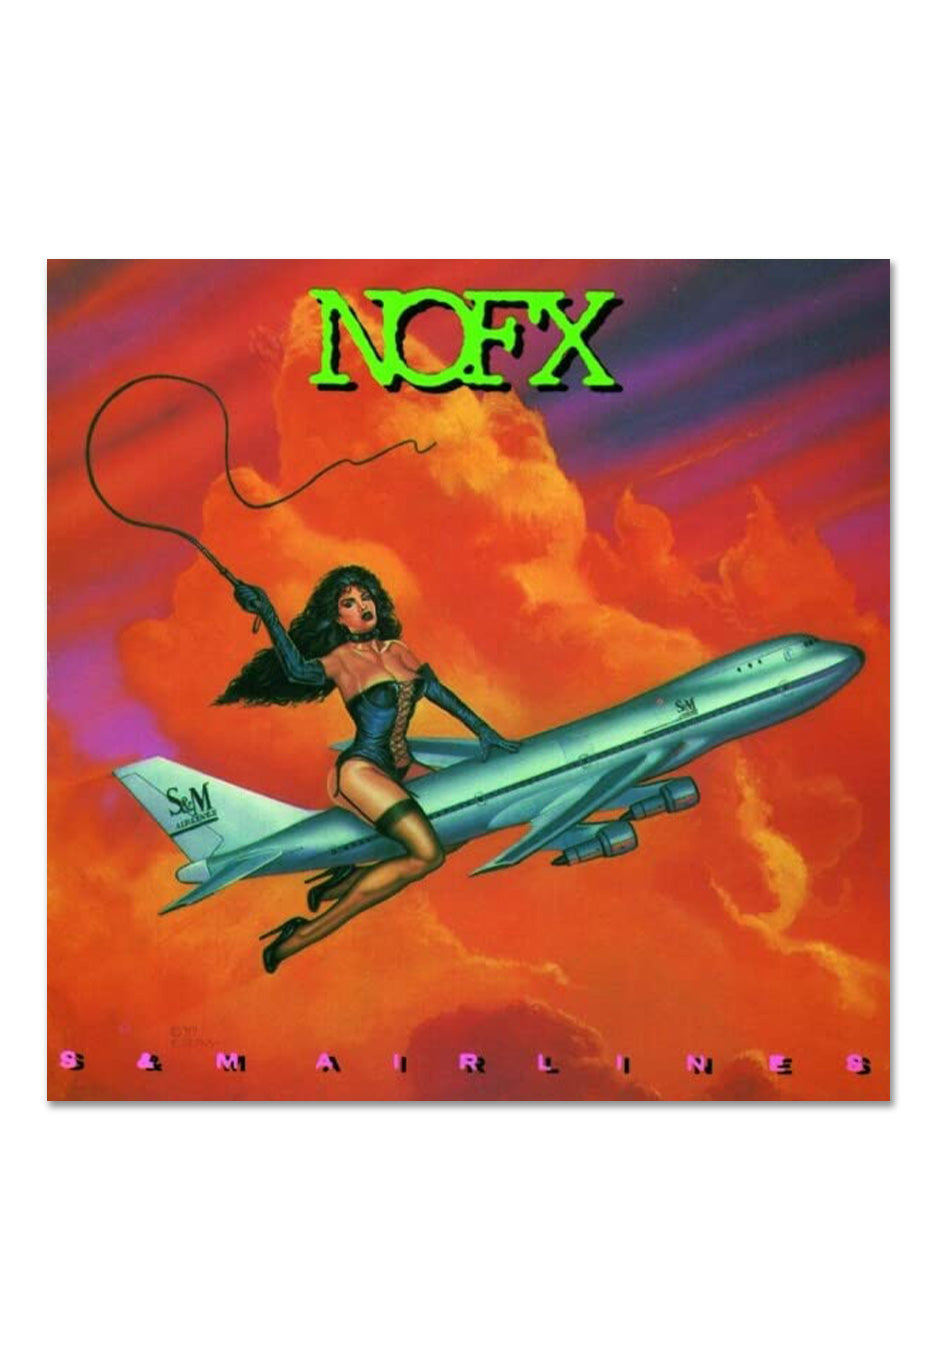 NOFX - S&M Airlines (Reissue) - Vinyl